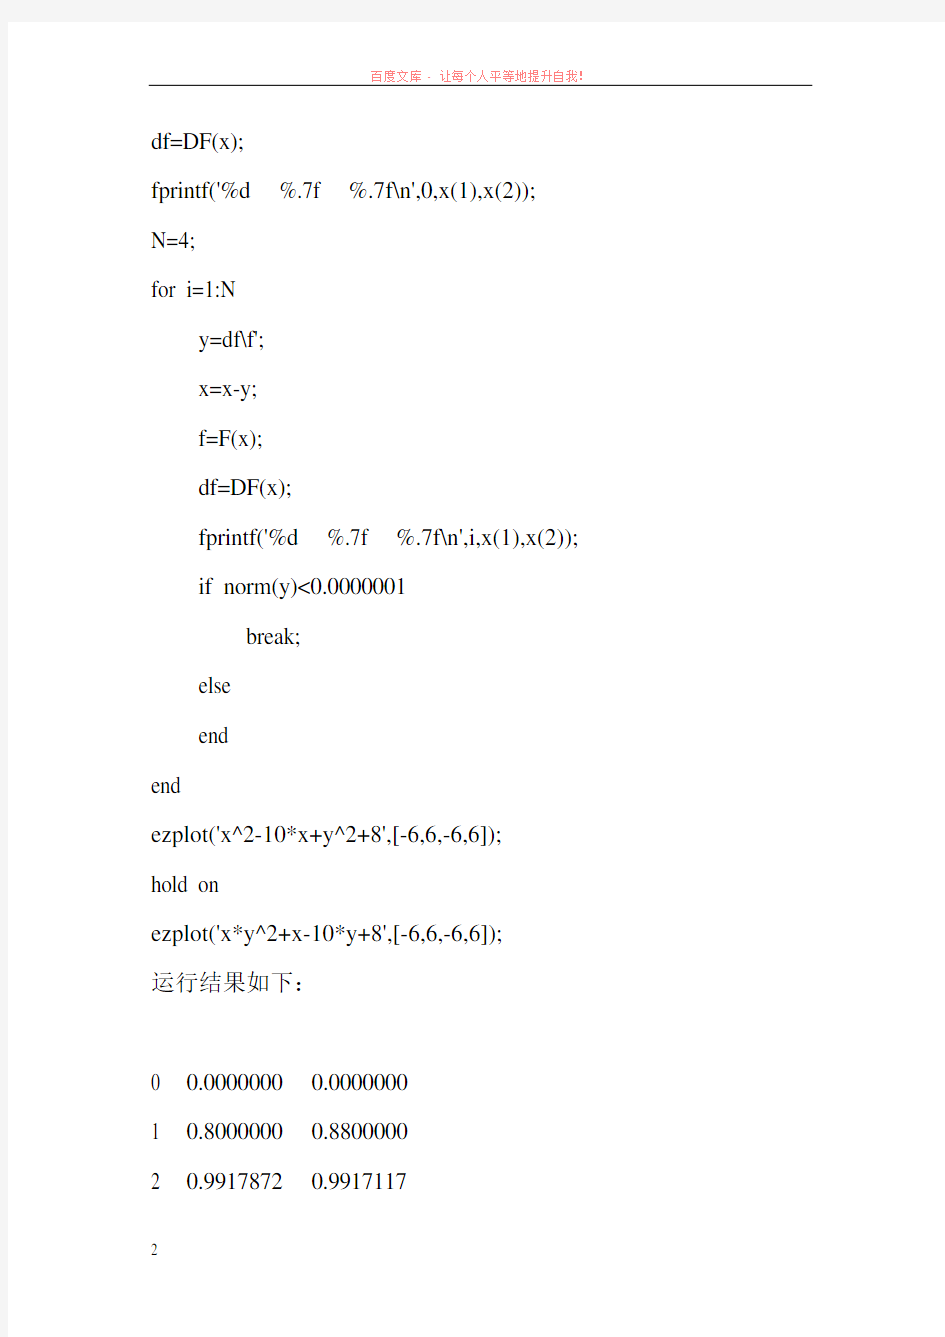 牛顿迭代法求解非线性方程组的代码